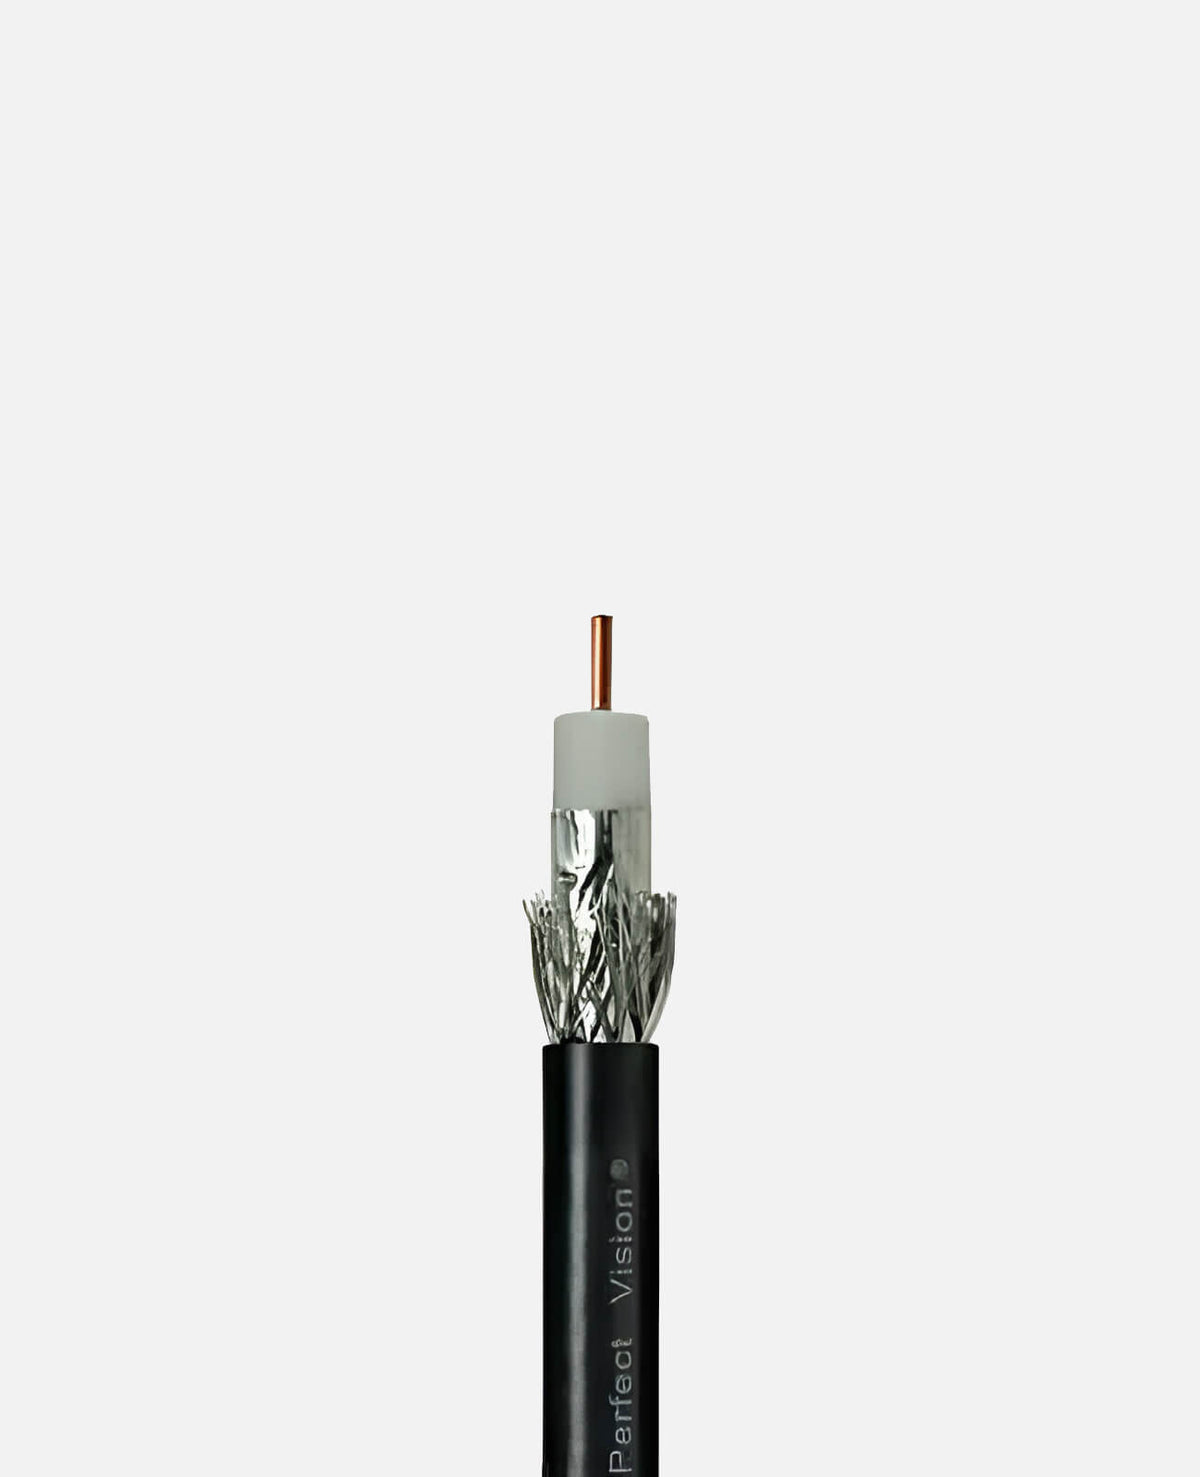 RG6 Coaxial Cable Solid Copper, 1000' Single Strand, Black (CB1B06DSCR0-05)